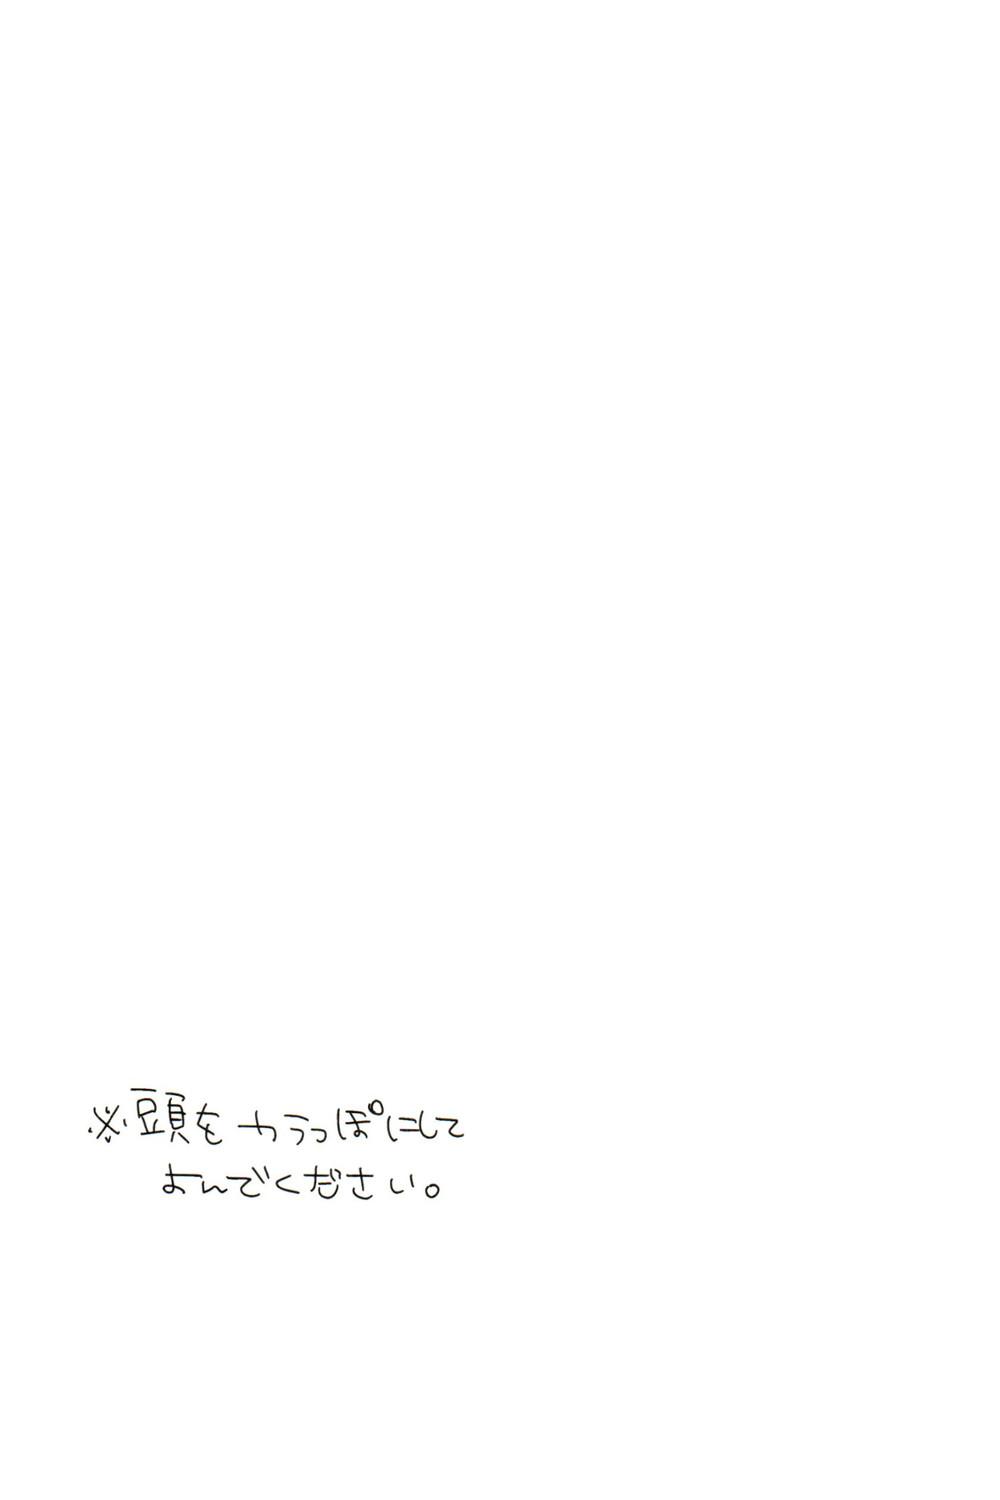 Strip Damena otona ni wa narimasen - Osomatsu-san Ngentot - Page 7